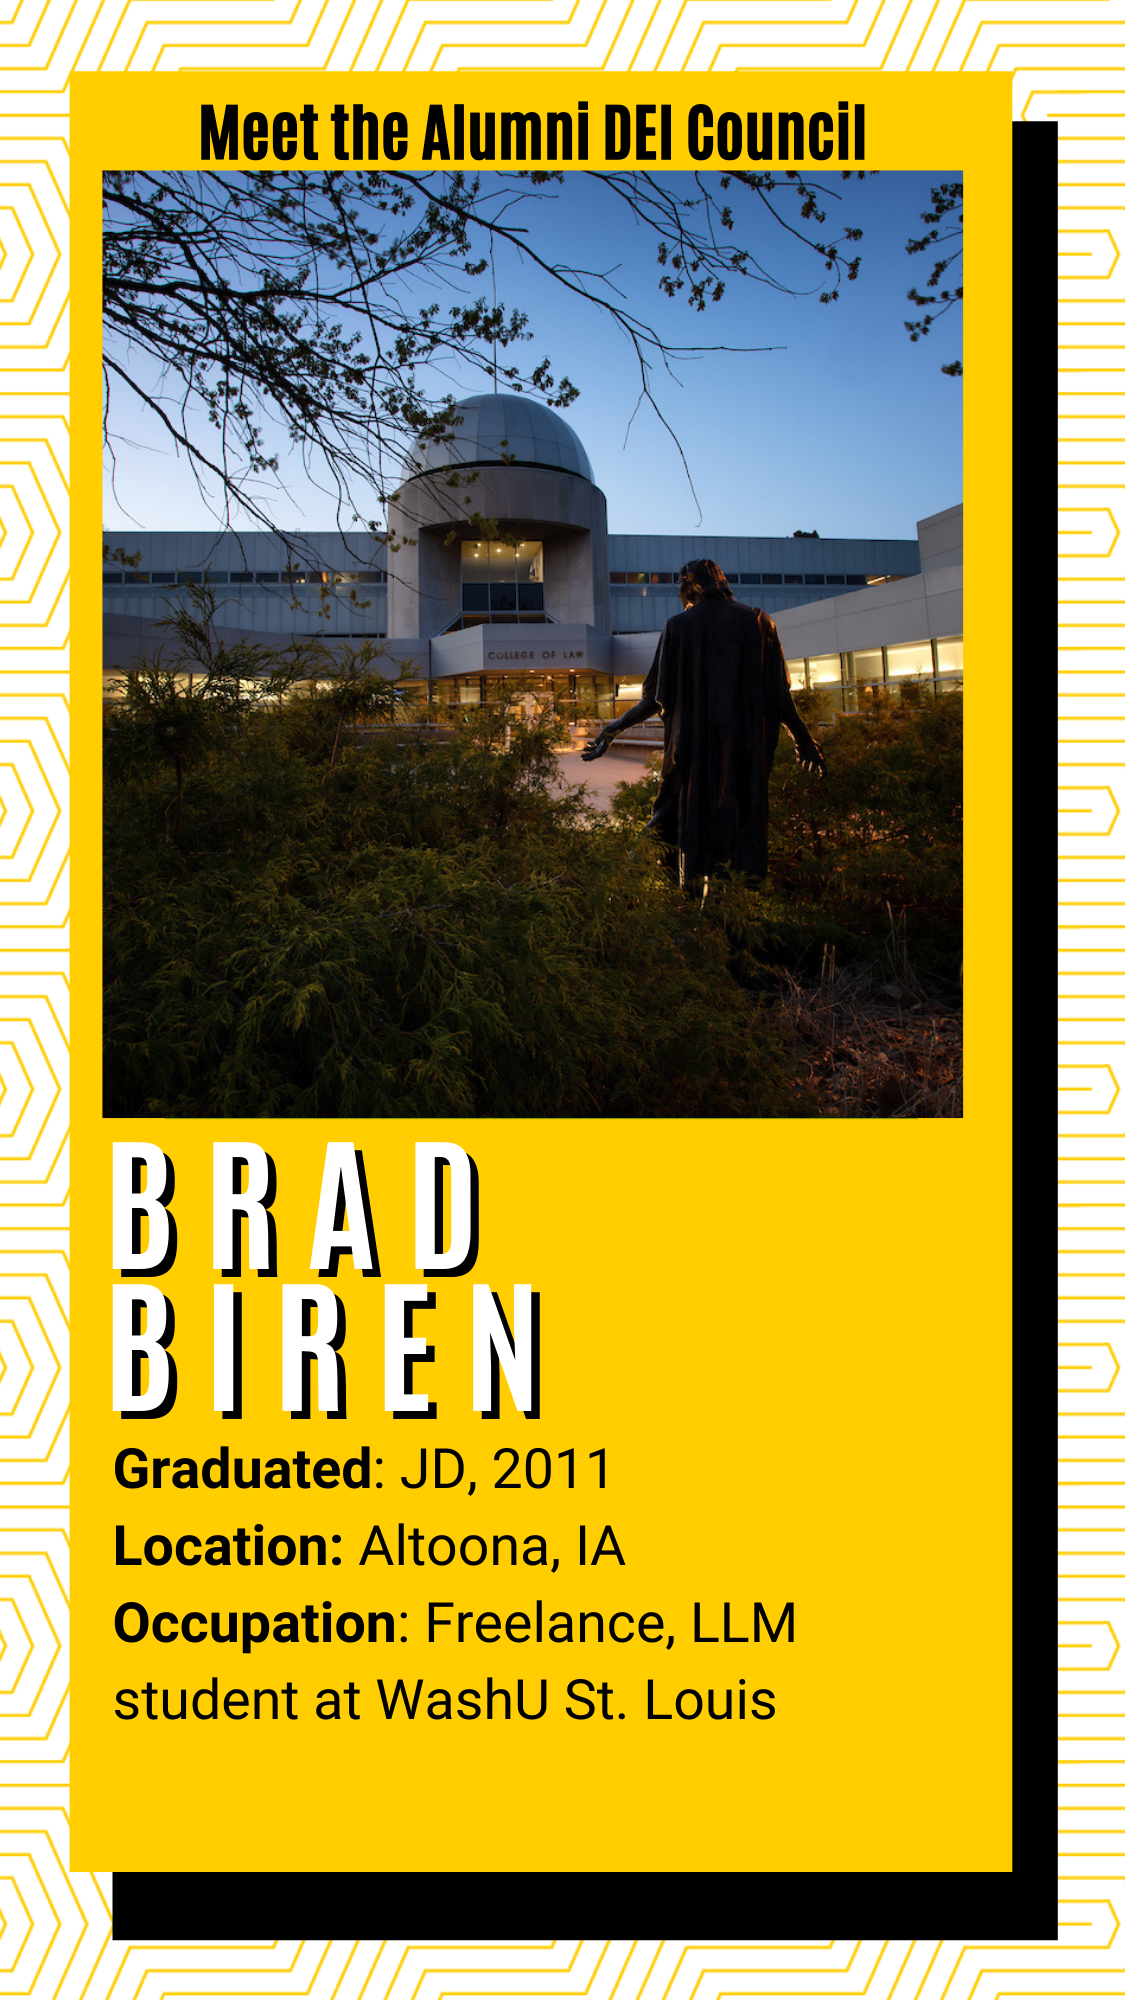 Meet the alumni DEI Council - Brad Biren